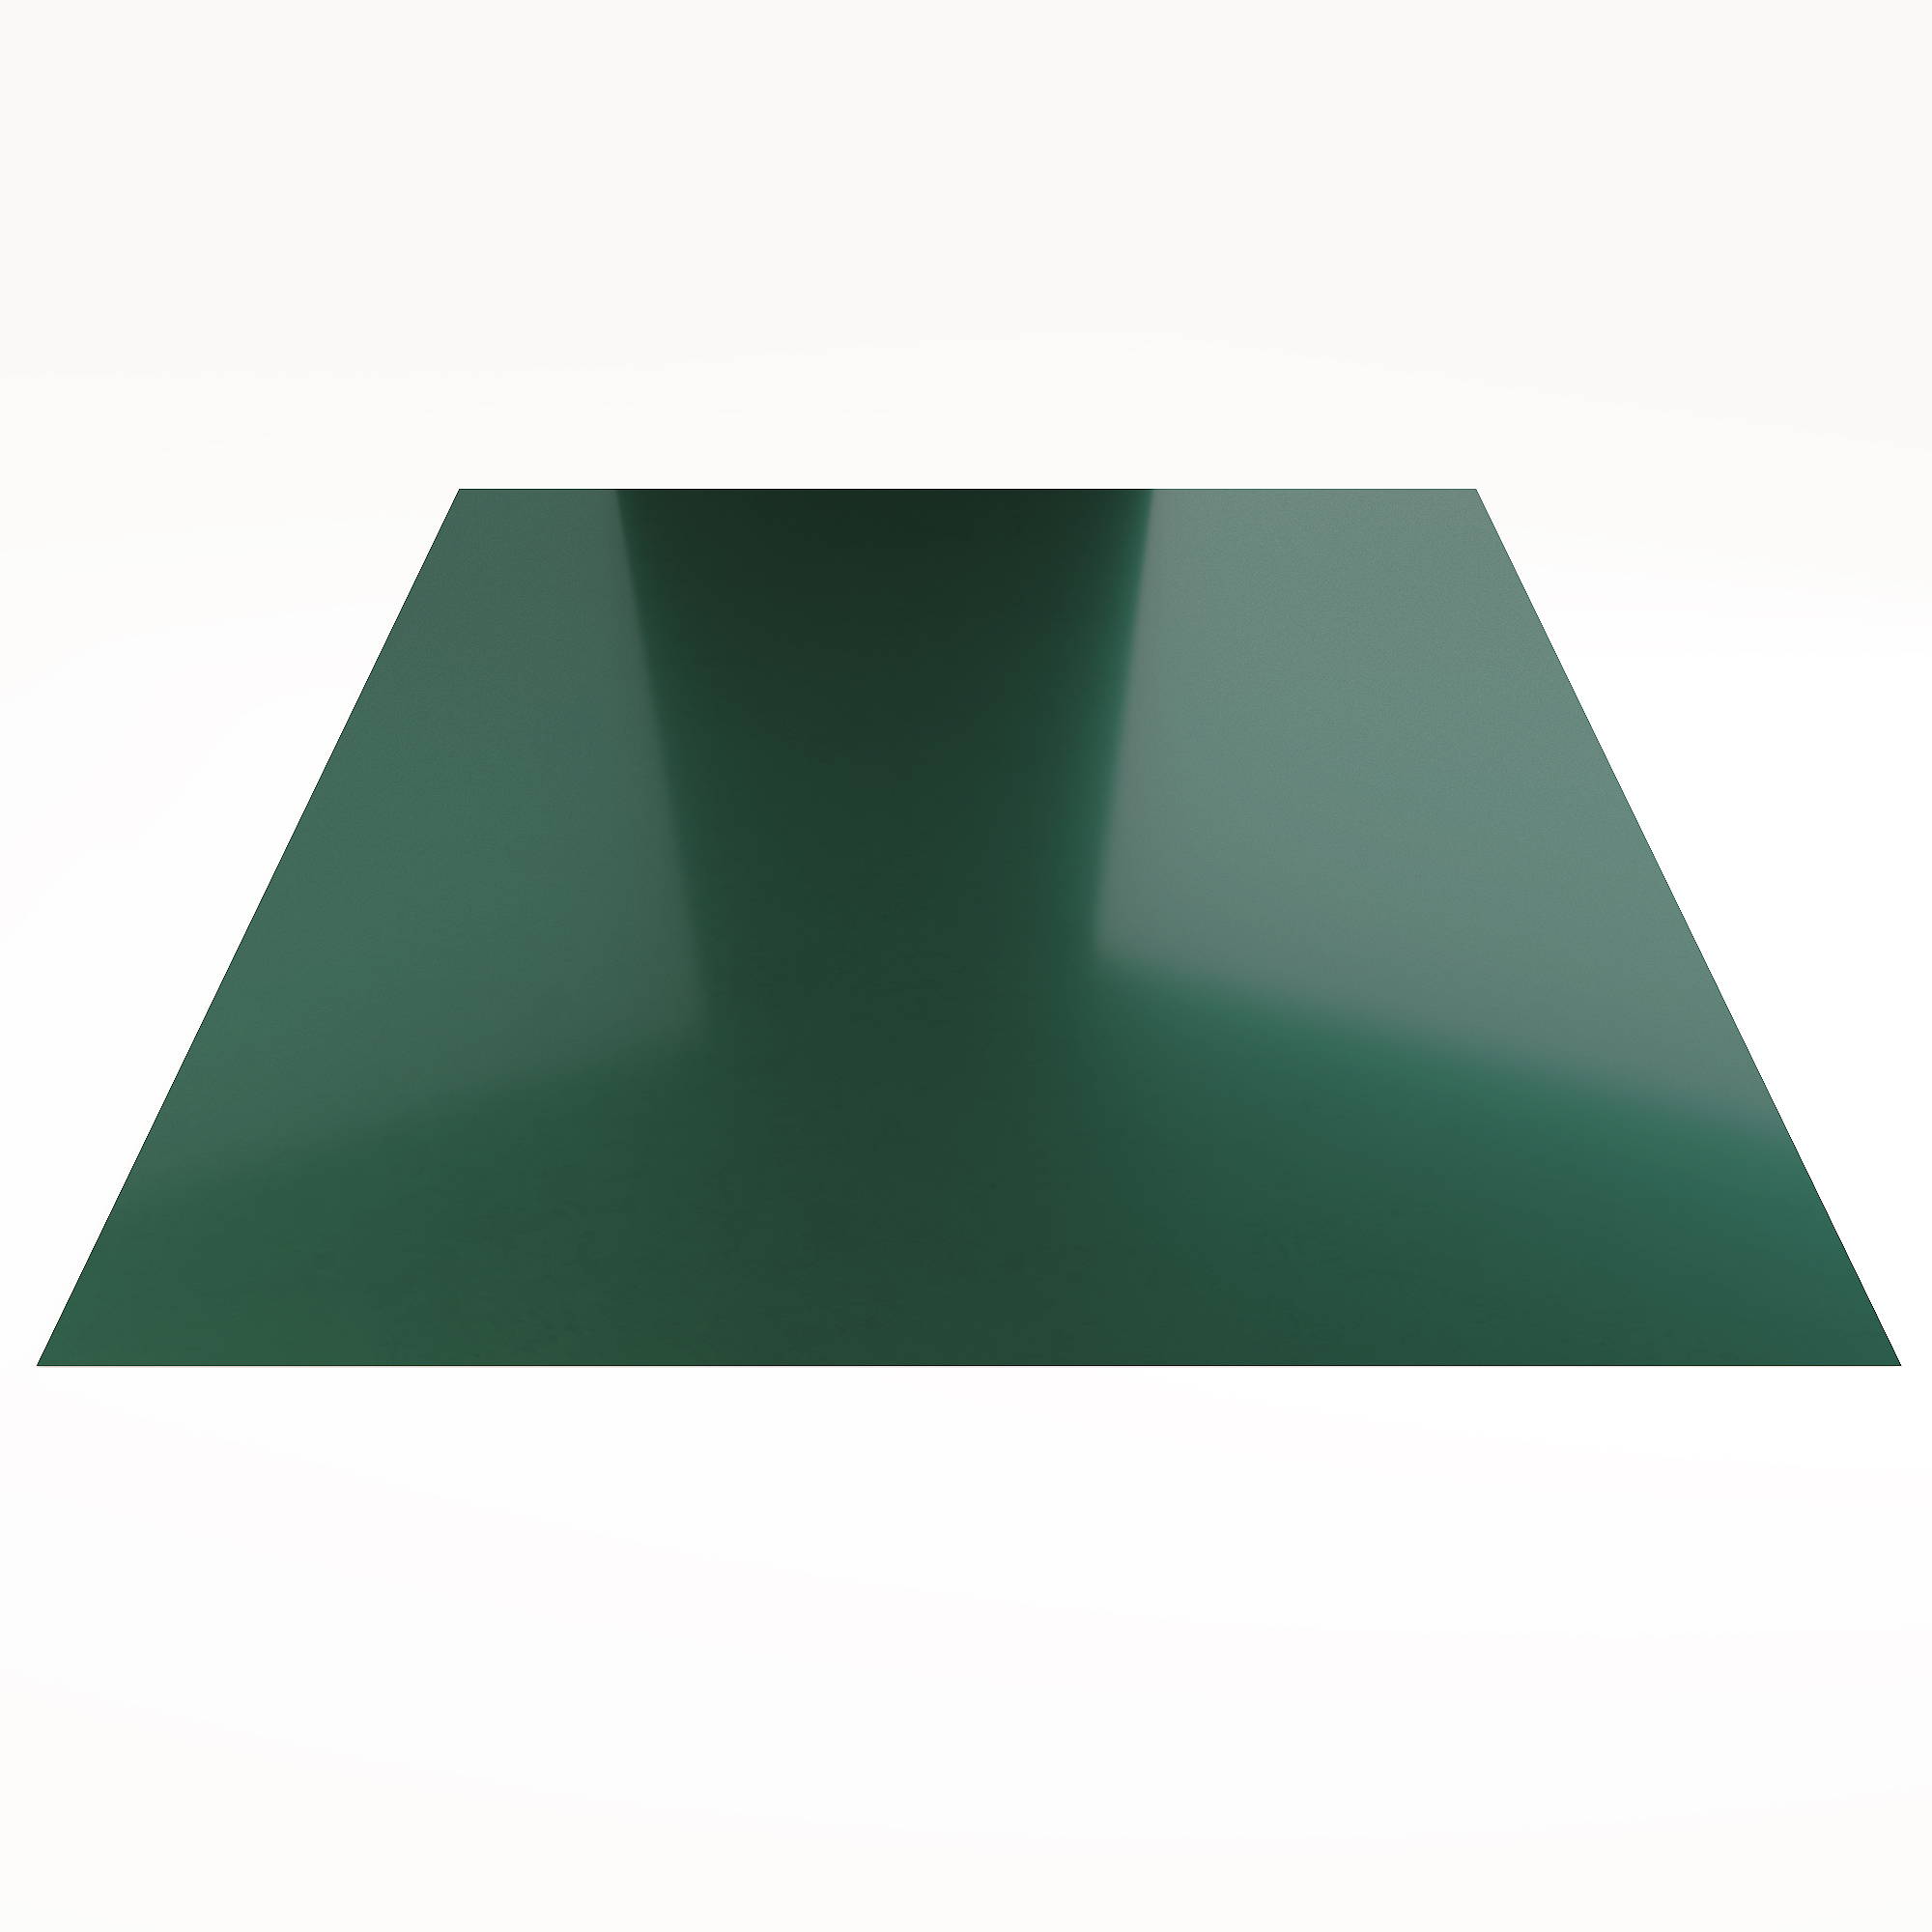 Гладкий лист Гладкий полиэстер RAL 6005 (Зелёный мох) 1800*1250*0,5 односторонний ламинированный